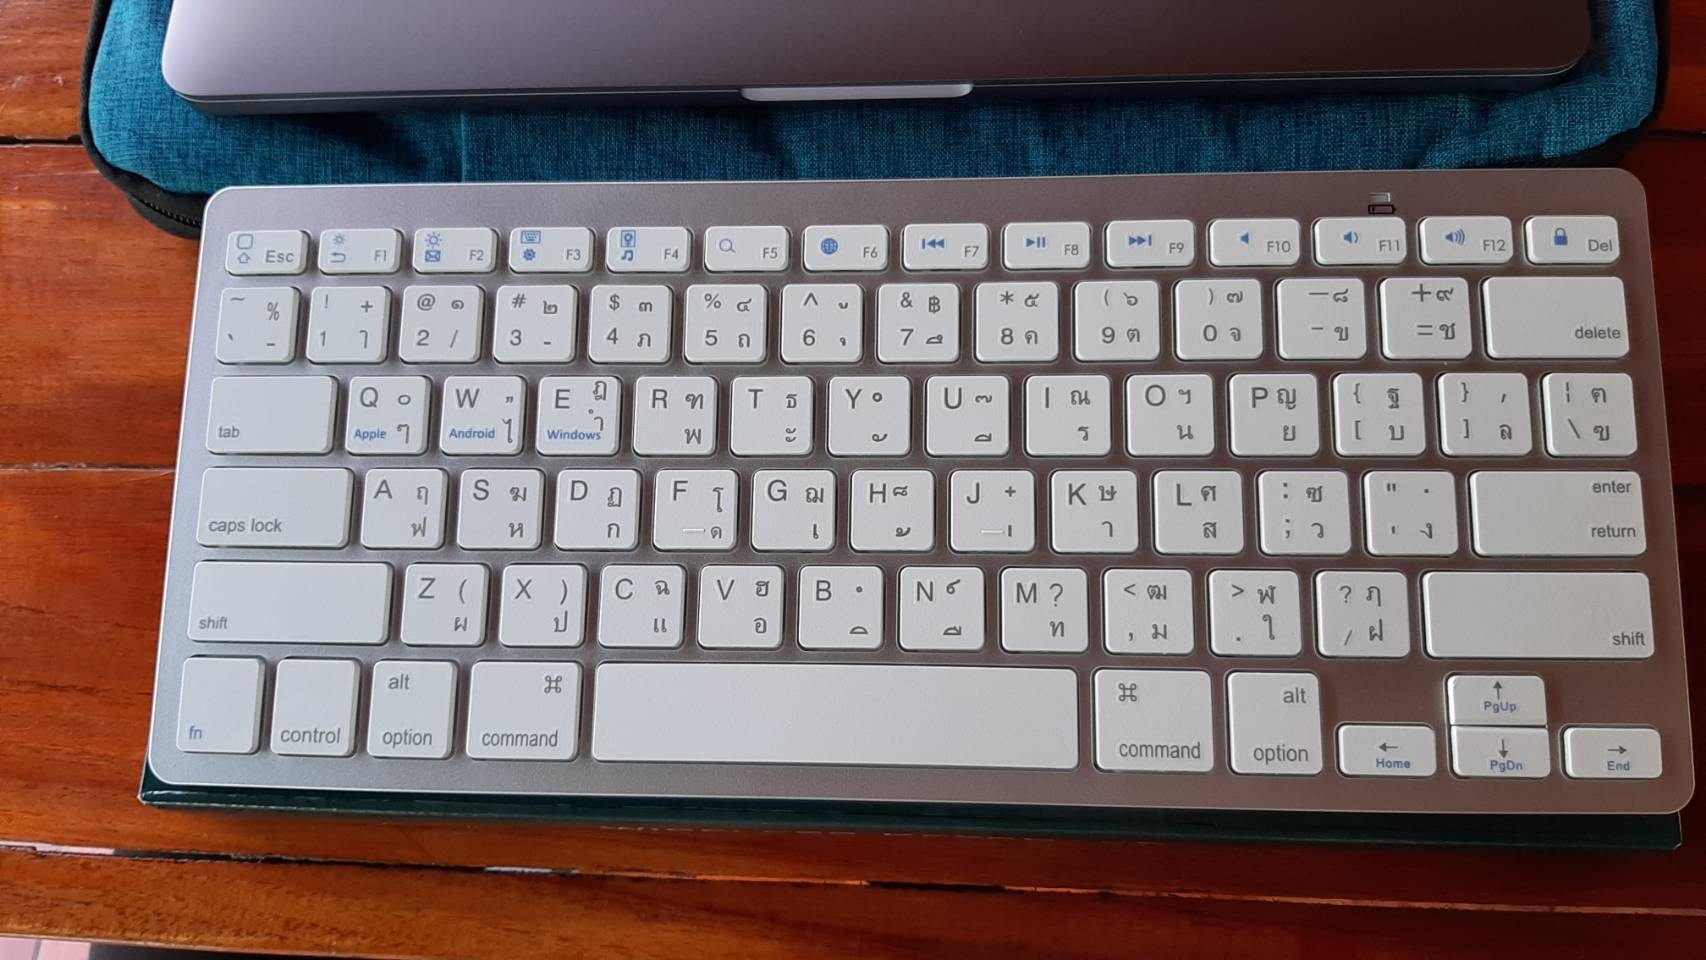 คีย์บอร์ด แมคบุ๊ค โปร Keyboard Macbook คีย์บอร์ดแมคบุ๊ค บูลทูธ (จีน)